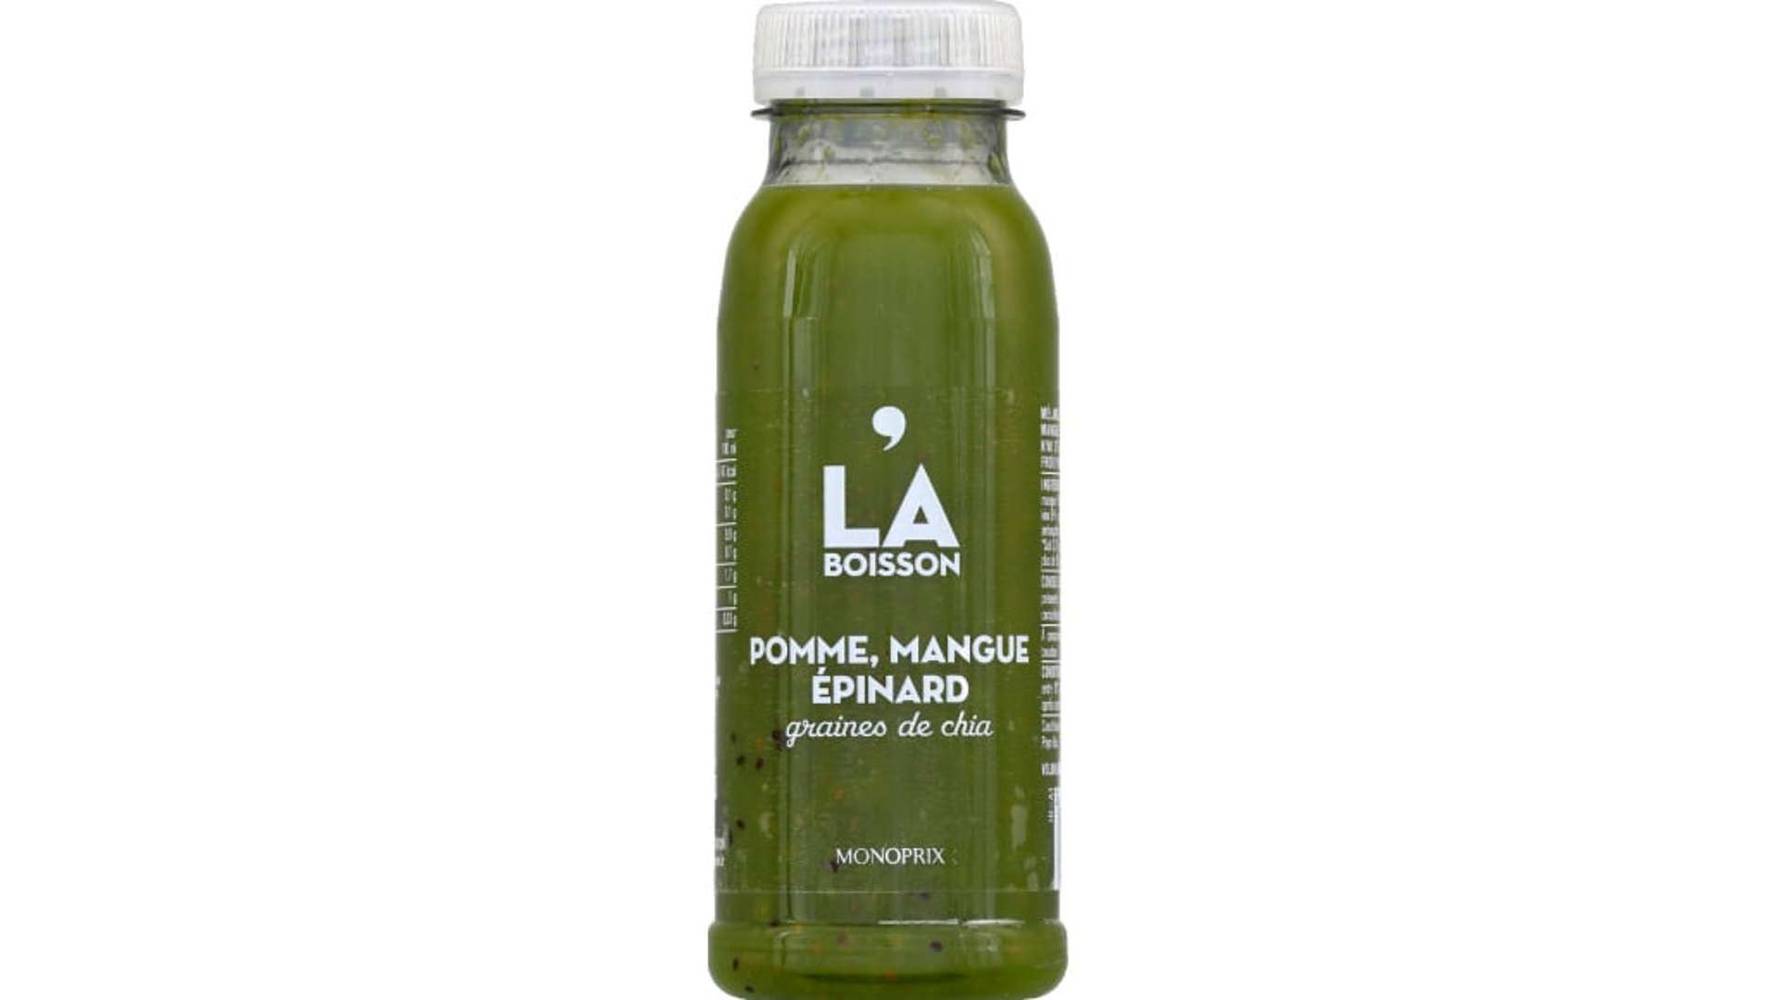 Monoprix - La boisson de juice (250 ml) (pomme, mangue épinard, graines de chia)